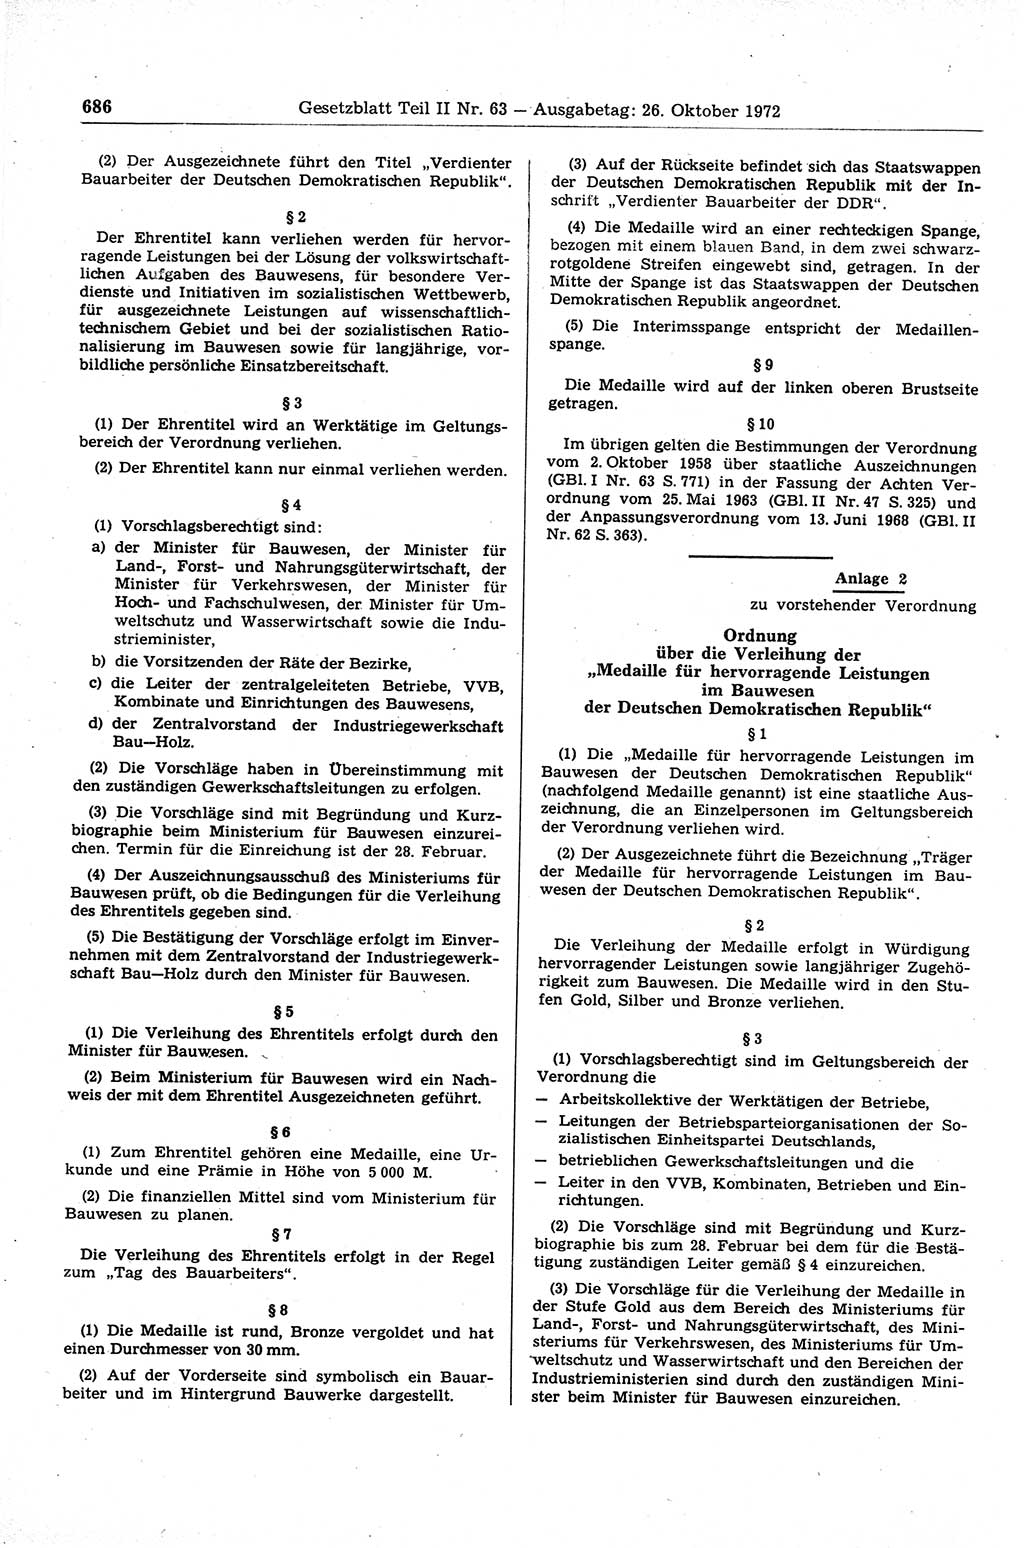 Gesetzblatt (GBl.) der Deutschen Demokratischen Republik (DDR) Teil ⅠⅠ 1972, Seite 686 (GBl. DDR ⅠⅠ 1972, S. 686)